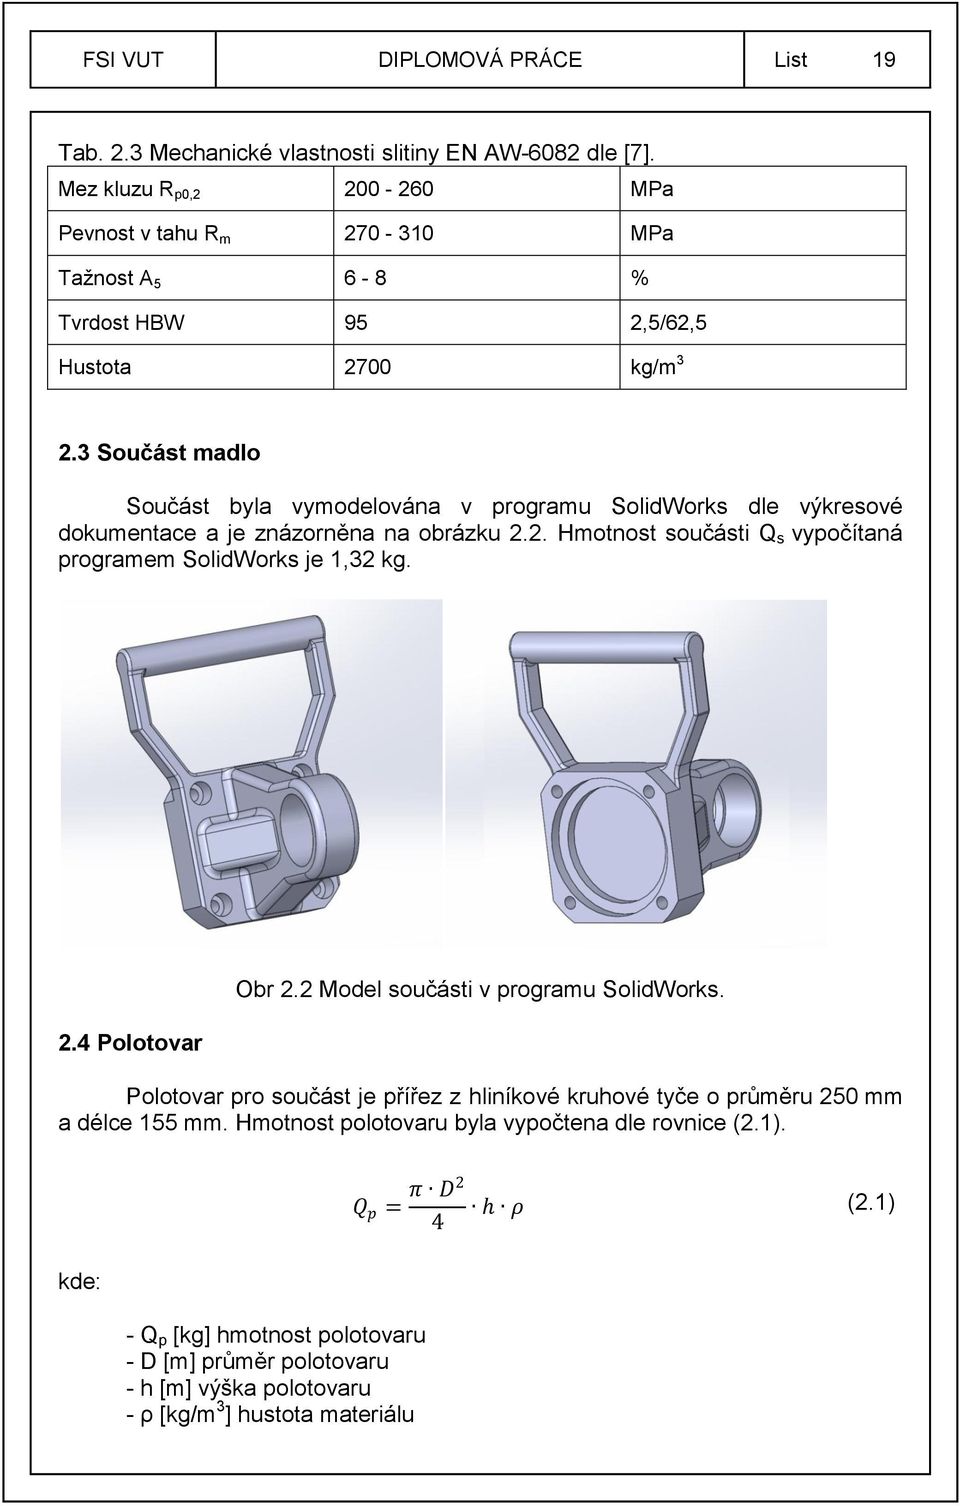 3 Součást madlo Součást byla vymodelována v programu SolidWorks dle výkresové dokumentace a je znázorněna na obrázku 2.2. Hmotnost součásti Q s vypočítaná programem SolidWorks je 1,32 kg.